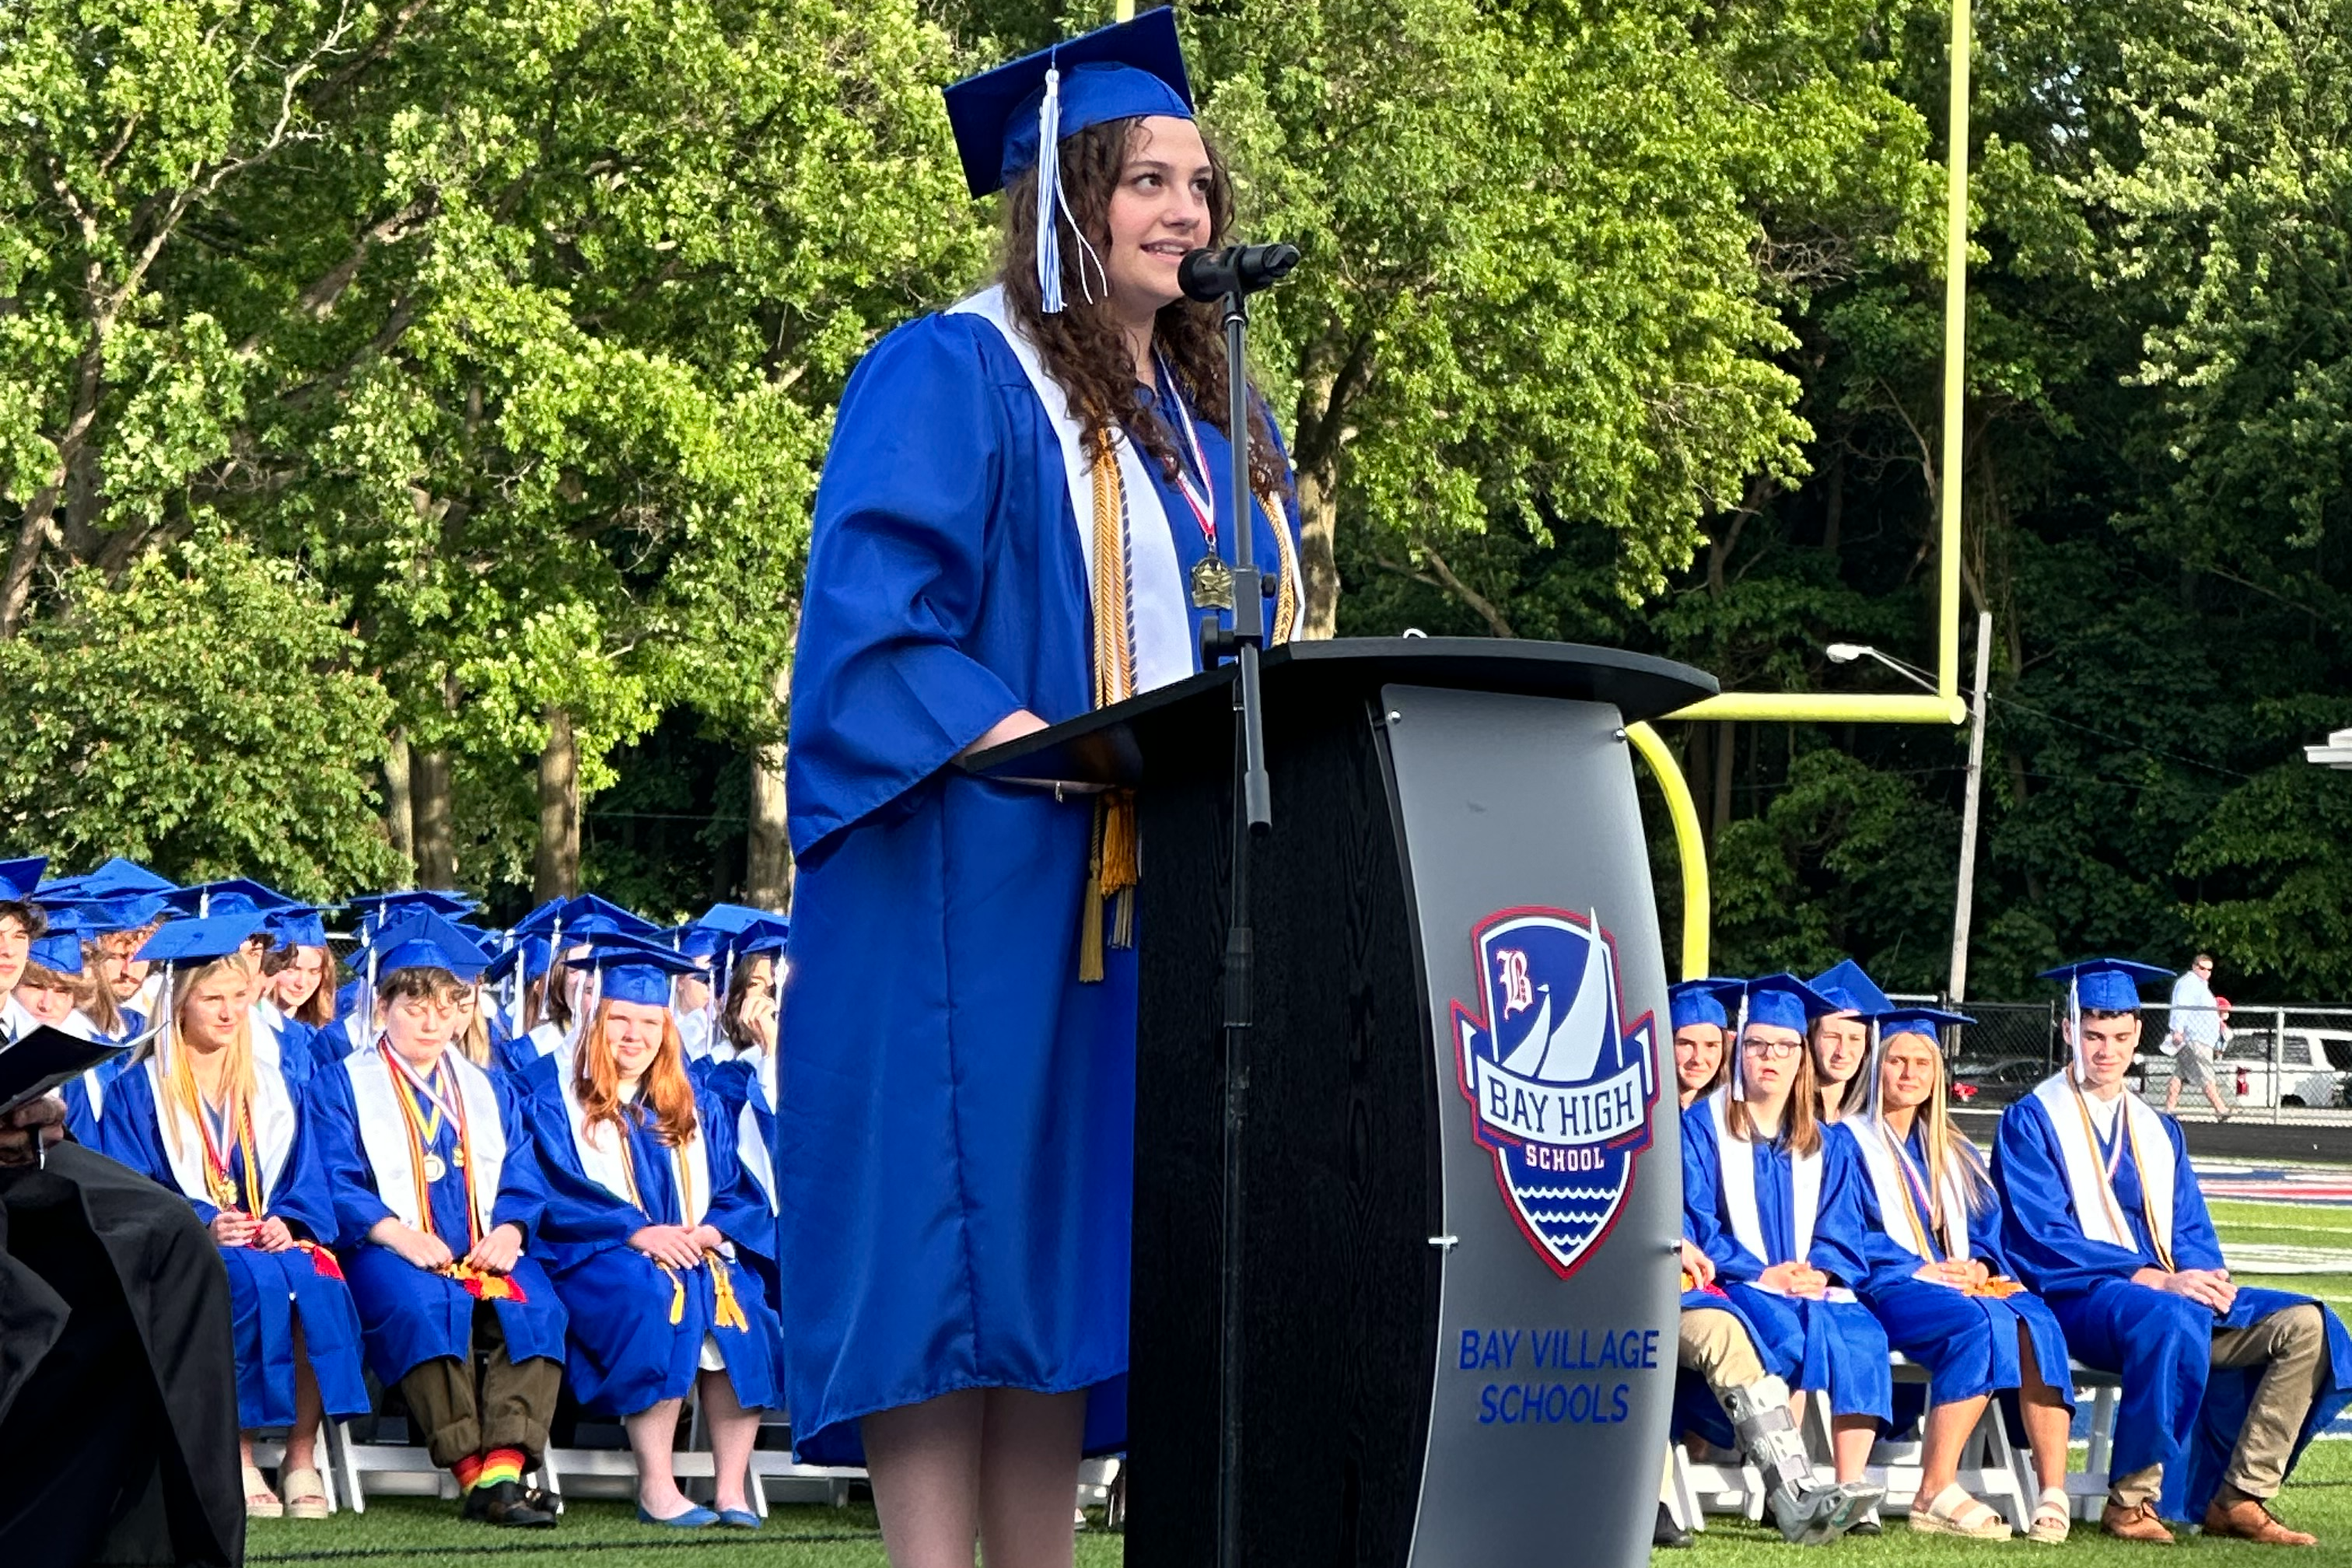 Girl giving graduation speech